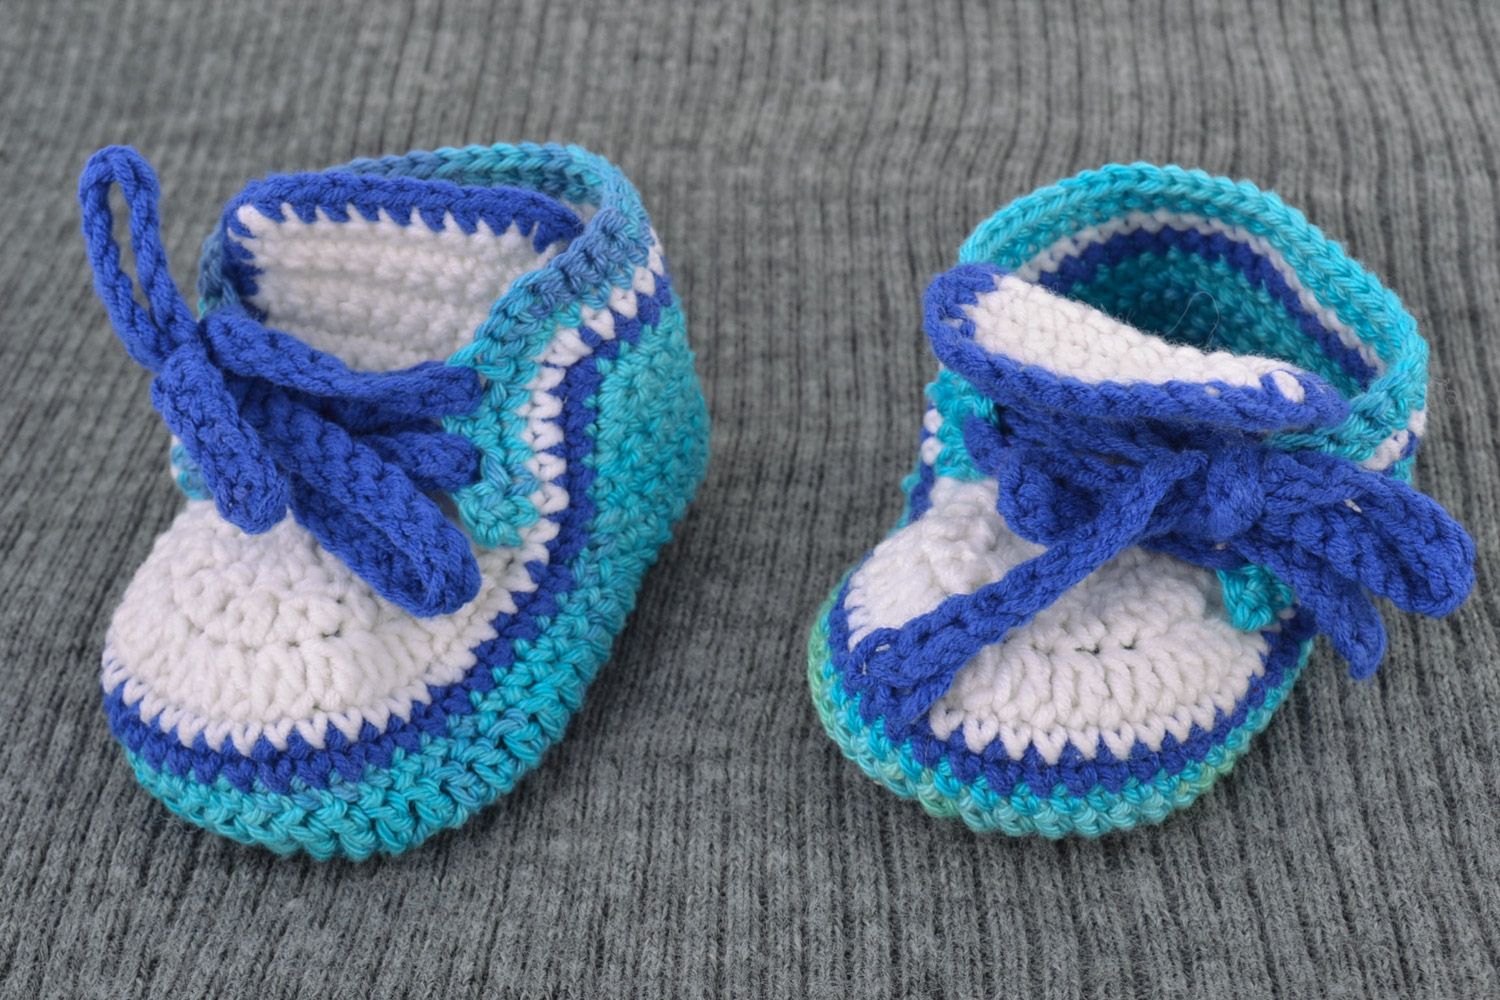 Пинетки для детей в виде ботиночек ручной работы из шерсти сине-голубые фото 1